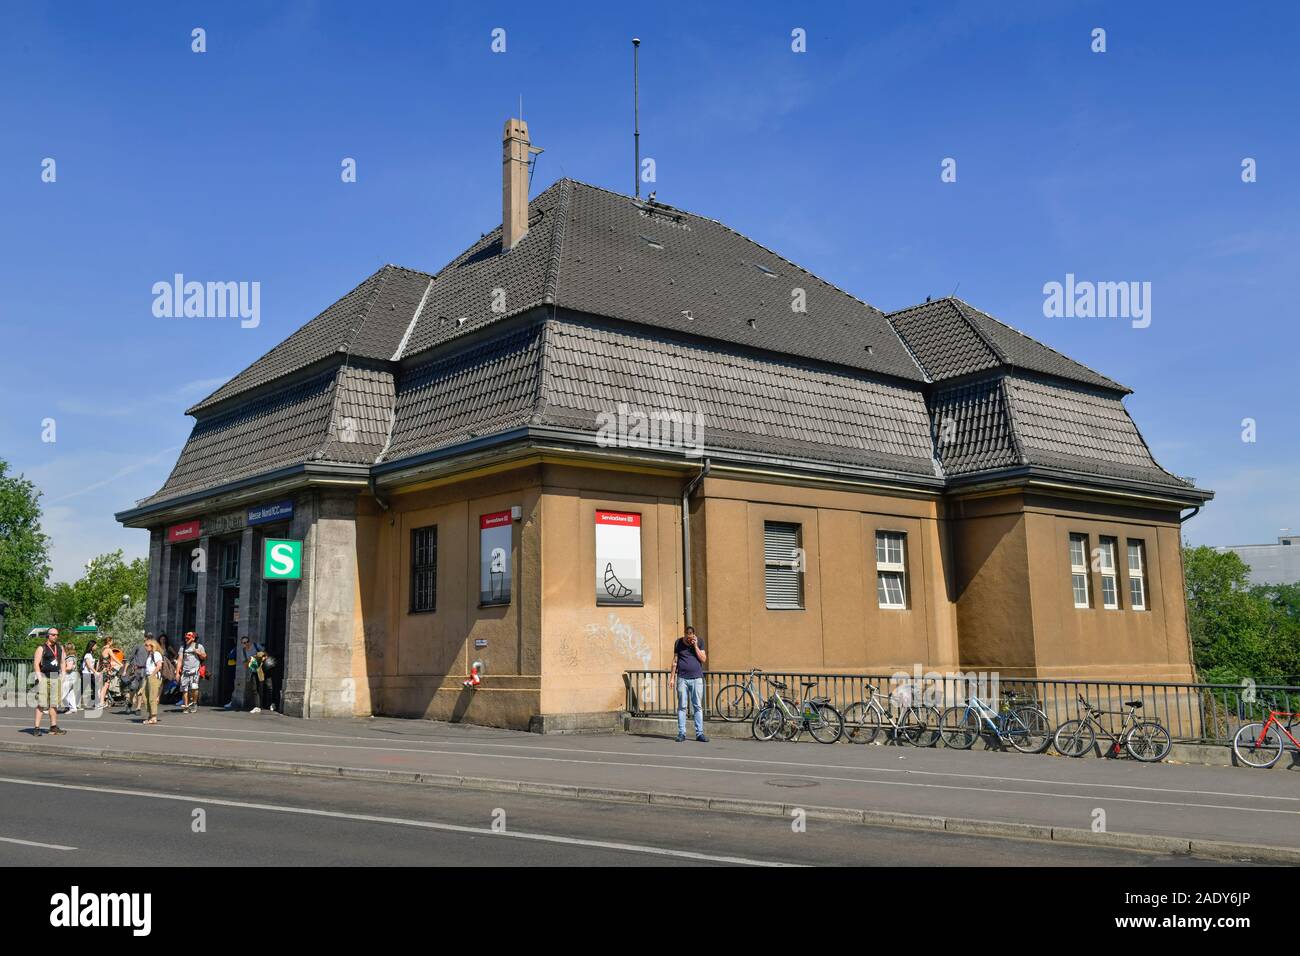 S-Bahnhof Witzleben ICC Messe Nord, Westend, Charlottenburg, Berlin, Deutschland Stock Photo